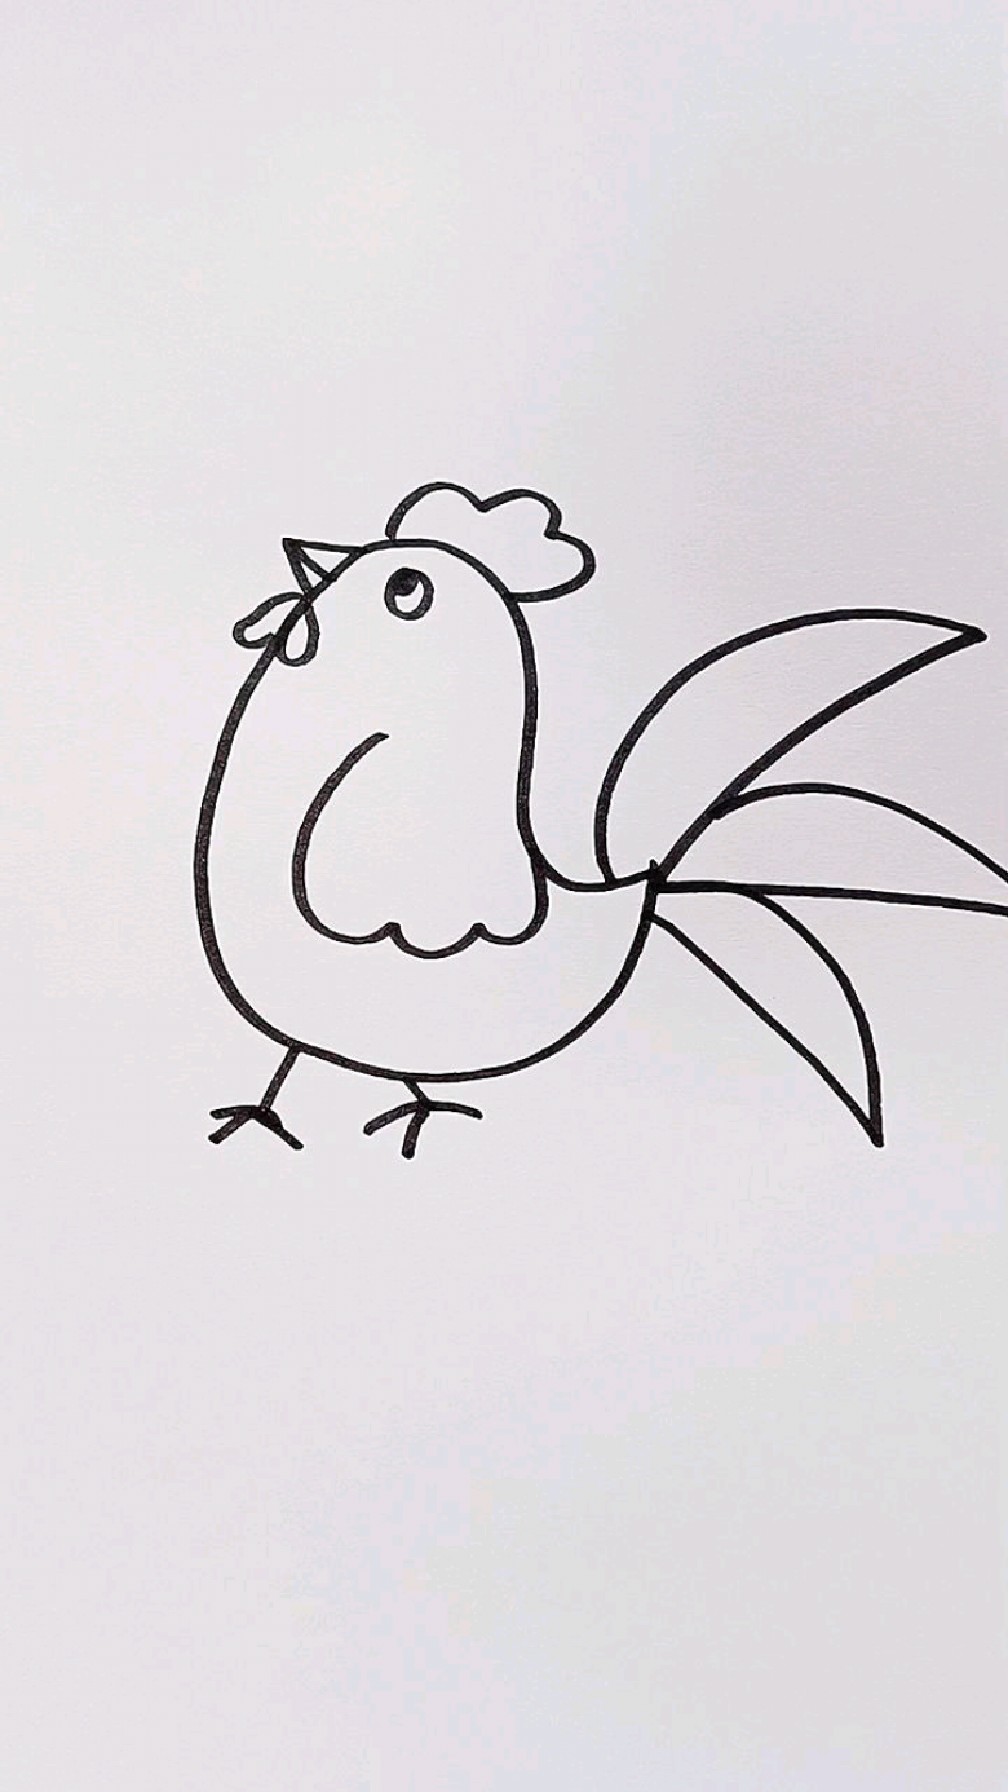 简笔画公鸡的画法图片